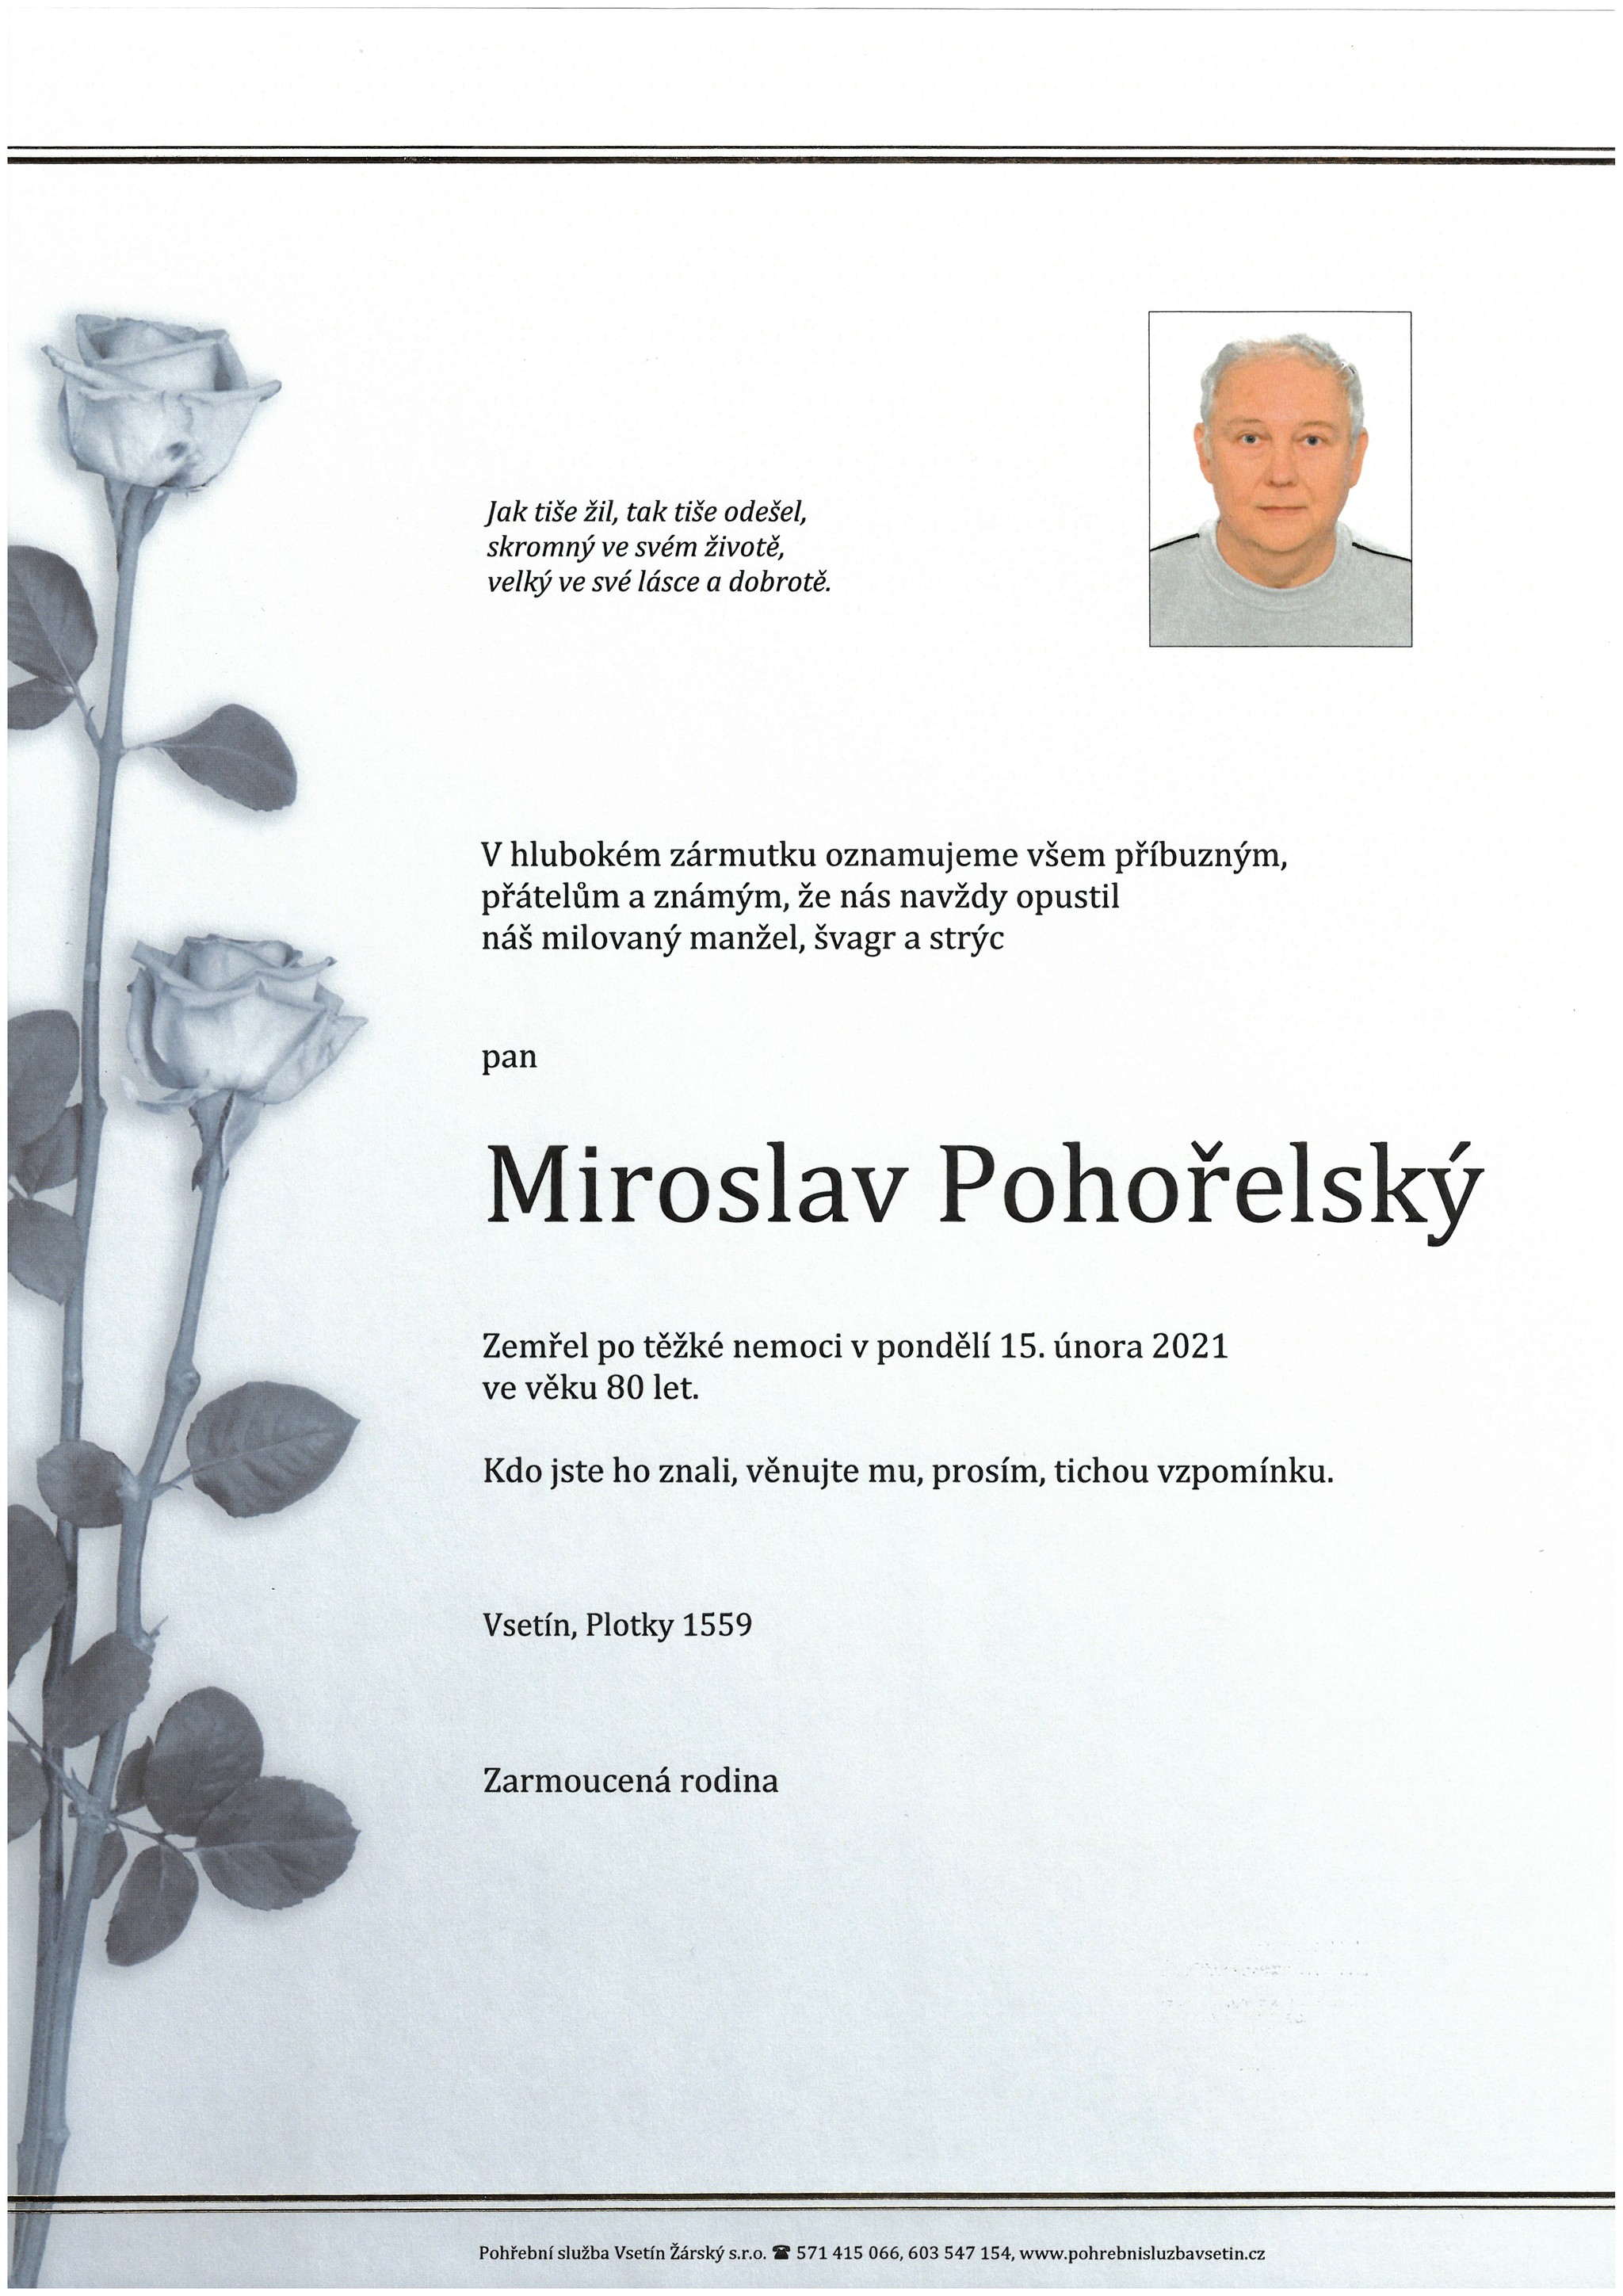 Miroslav Pohořelský